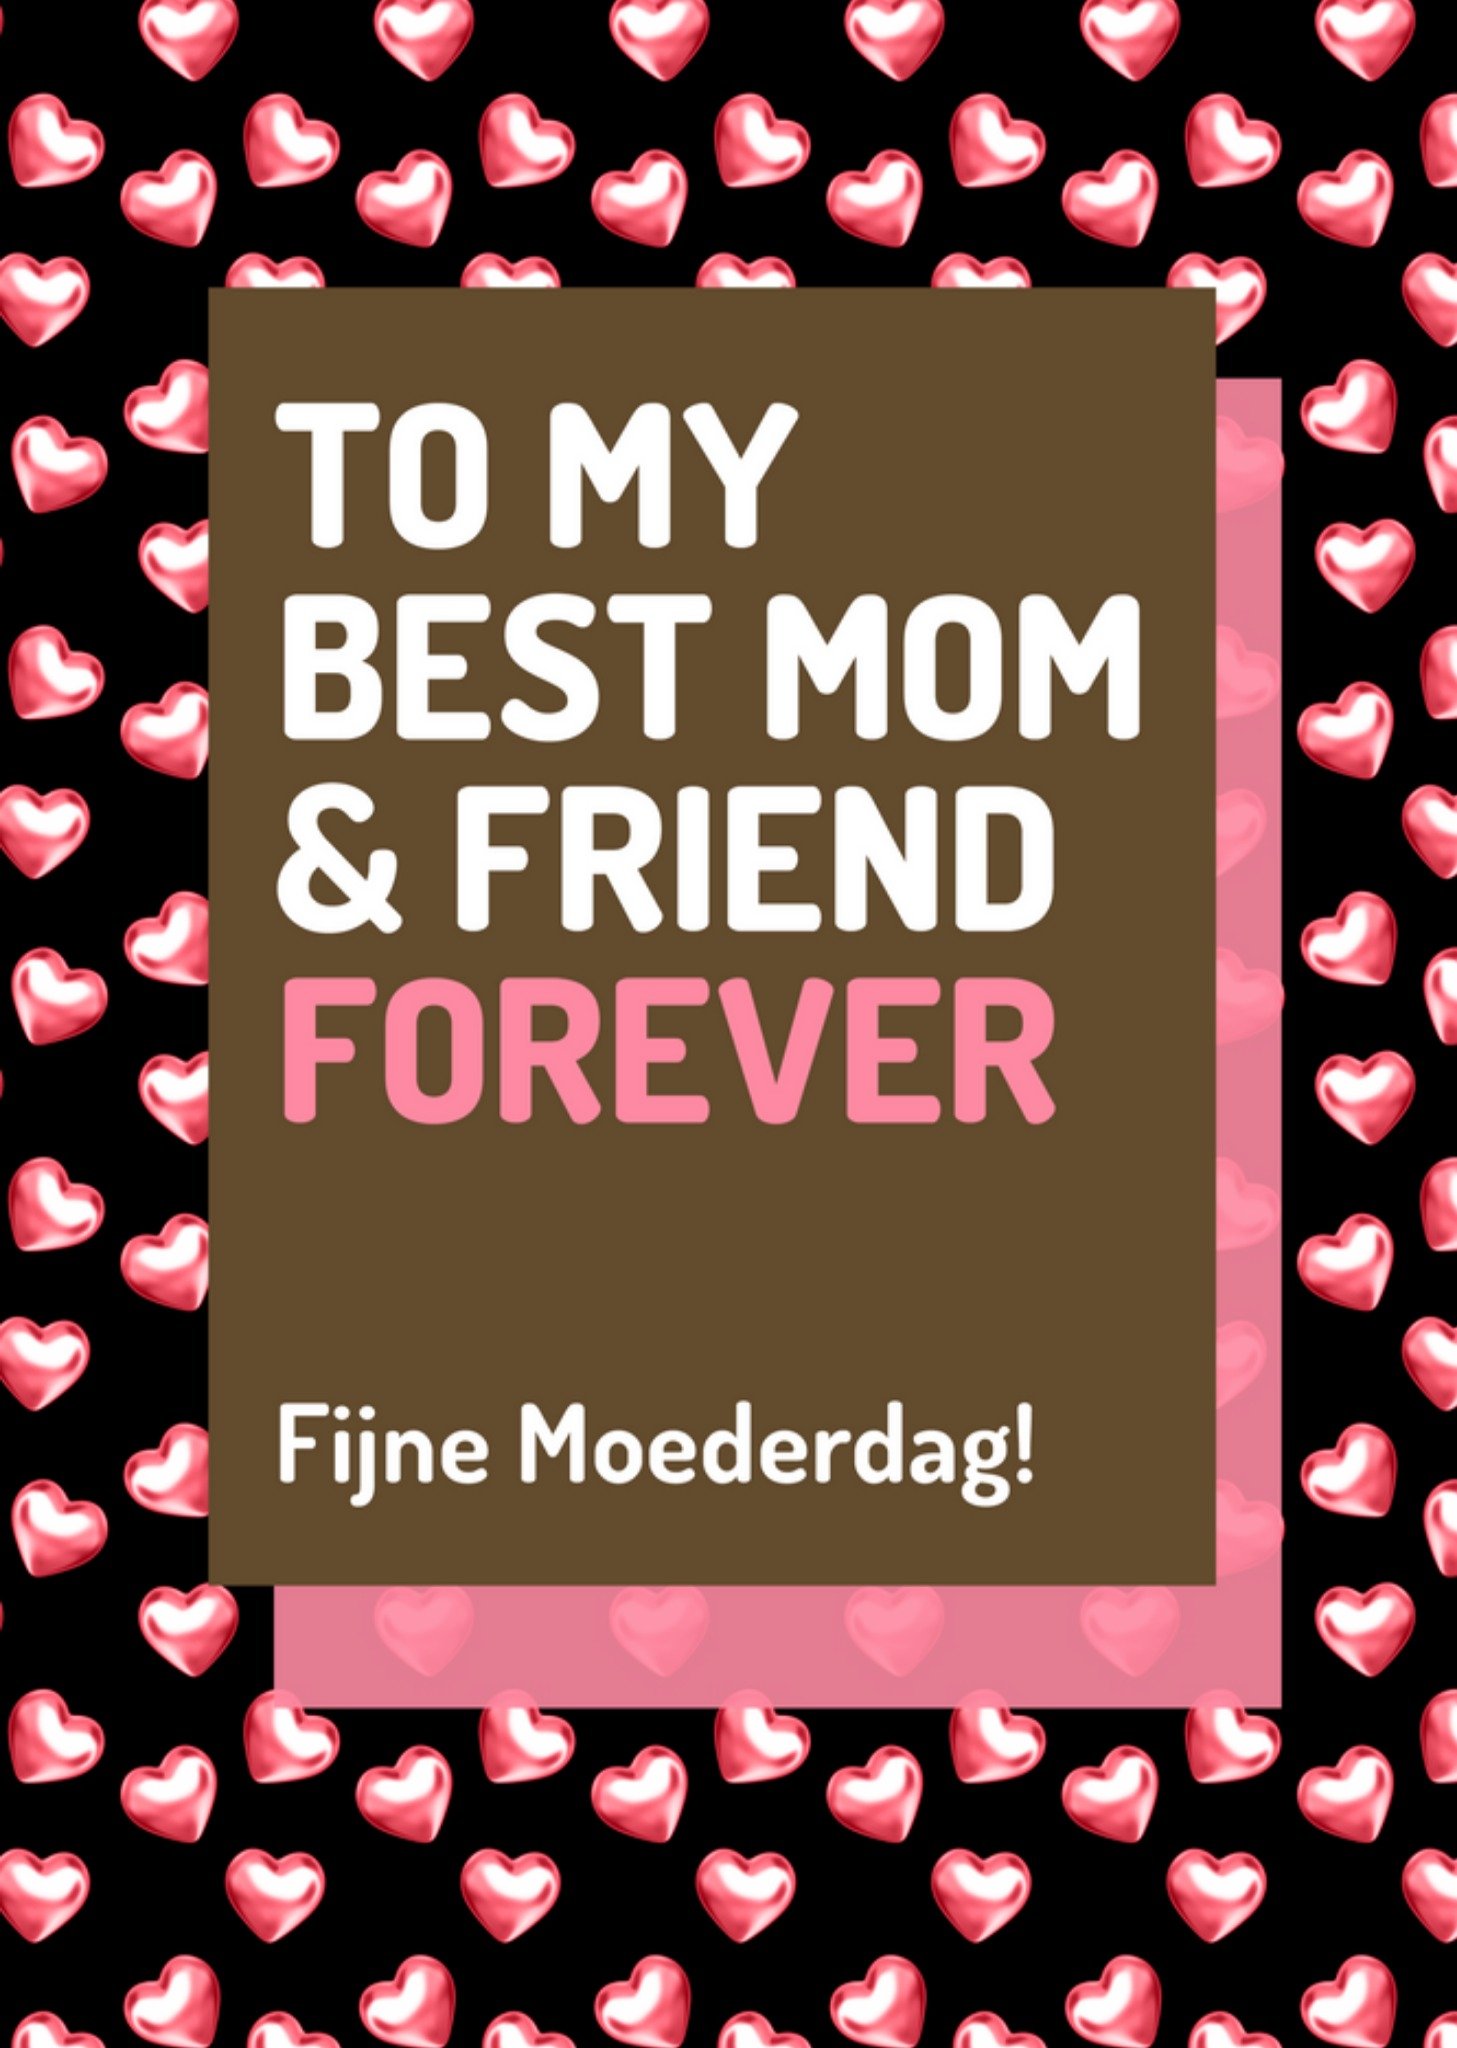 Love Repeat - Moederdagkaart - Best Mom Friend